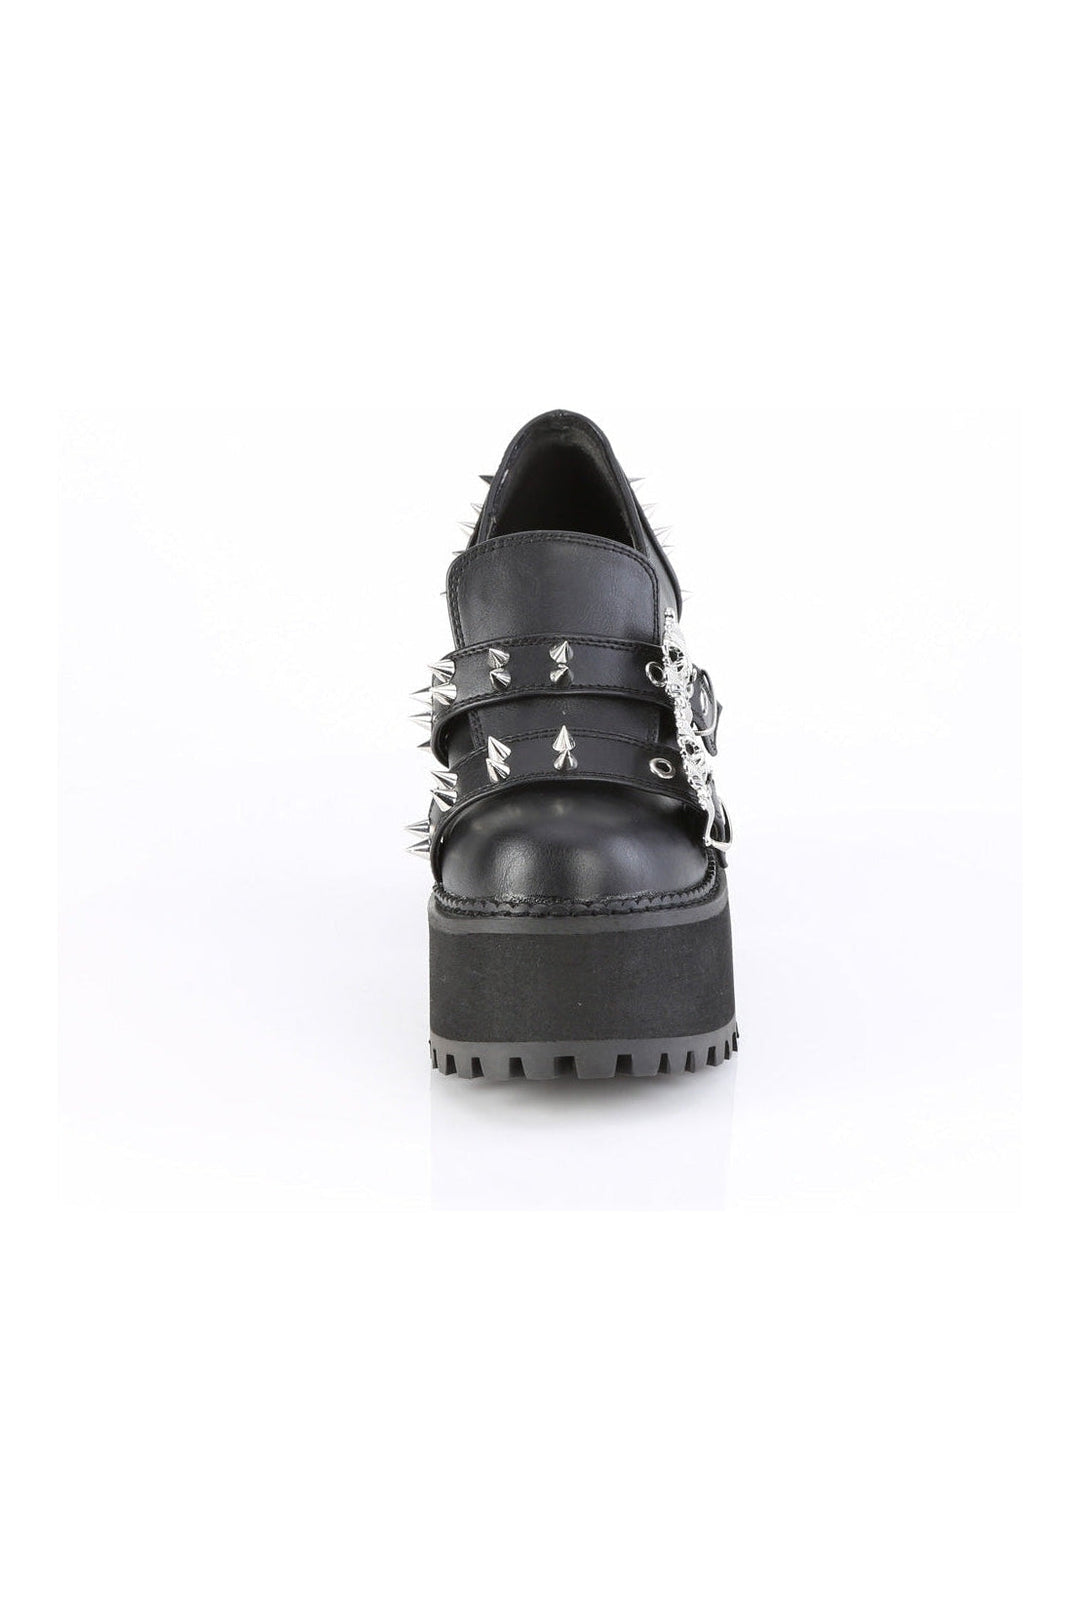 ASSAULT-38 Black Vegan Leather Loafer